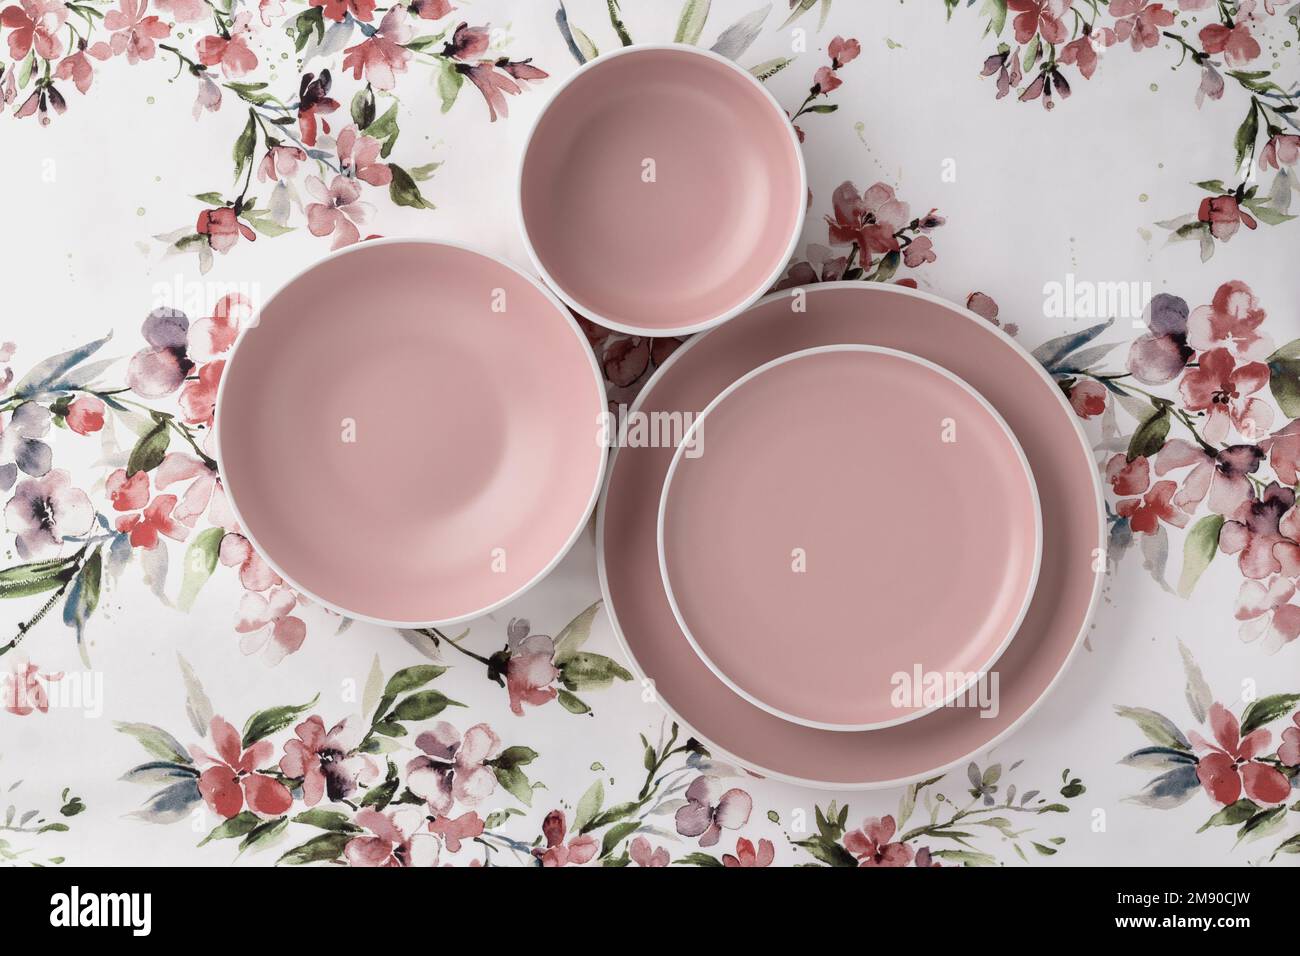 Leere saubere Teller auf einer weißen Tischdecke mit Blumenmuster, Blick von der Tischplatte. Flach liegend, minimalistisches Design. Rosafarbenes Keramikgeschirr. Trendiges Geschirr Stockfoto